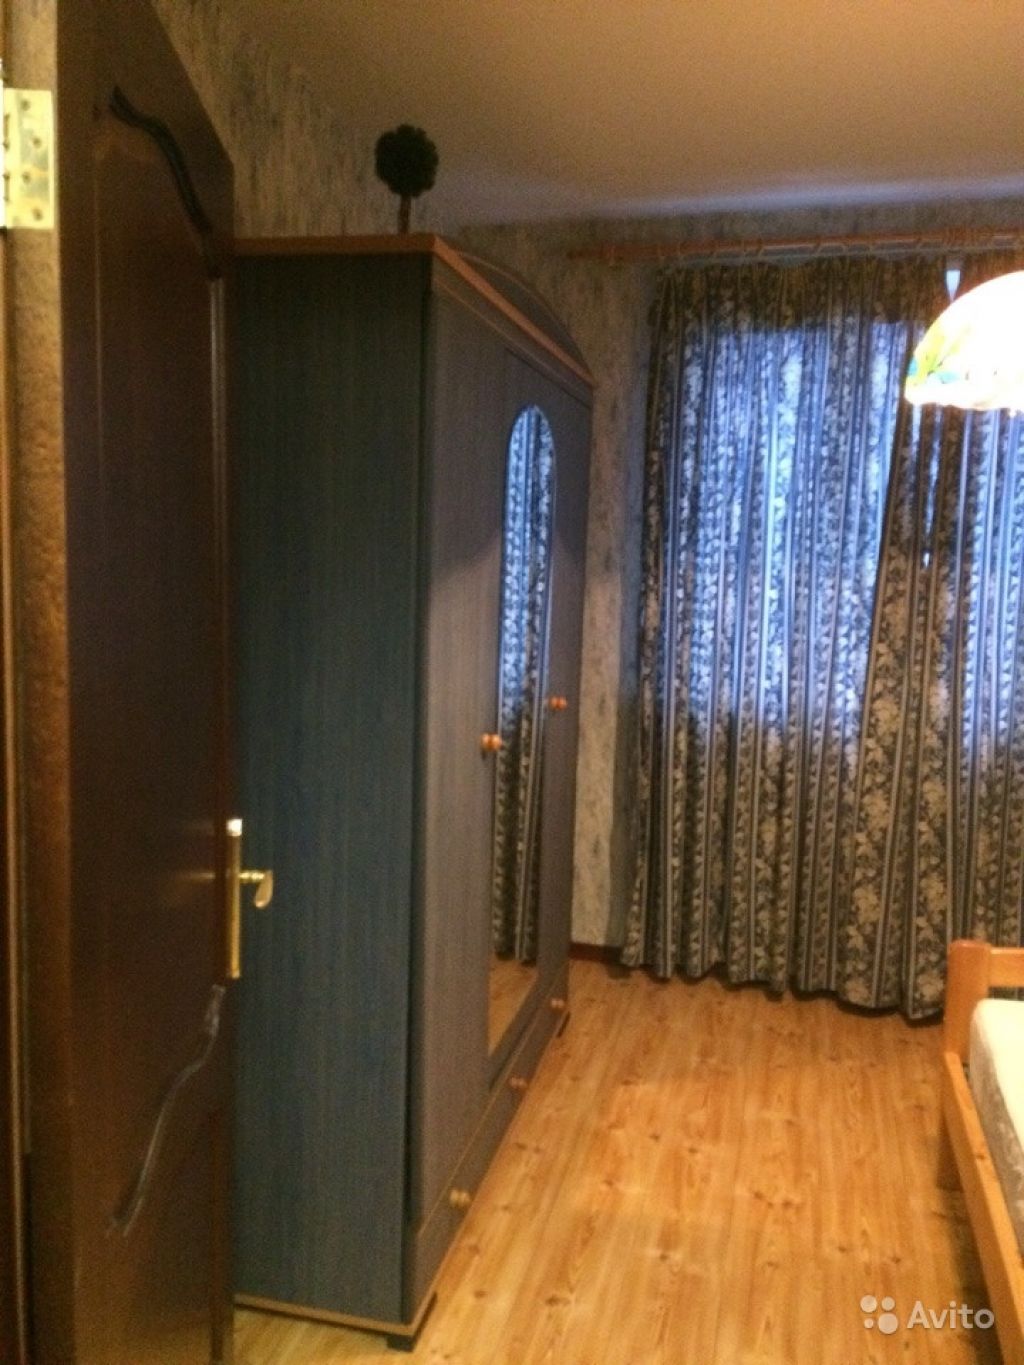 Сдам квартиру 3-к квартира 78 м² на 6 этаже 22-этажного панельного дома в Москве. Фото 1